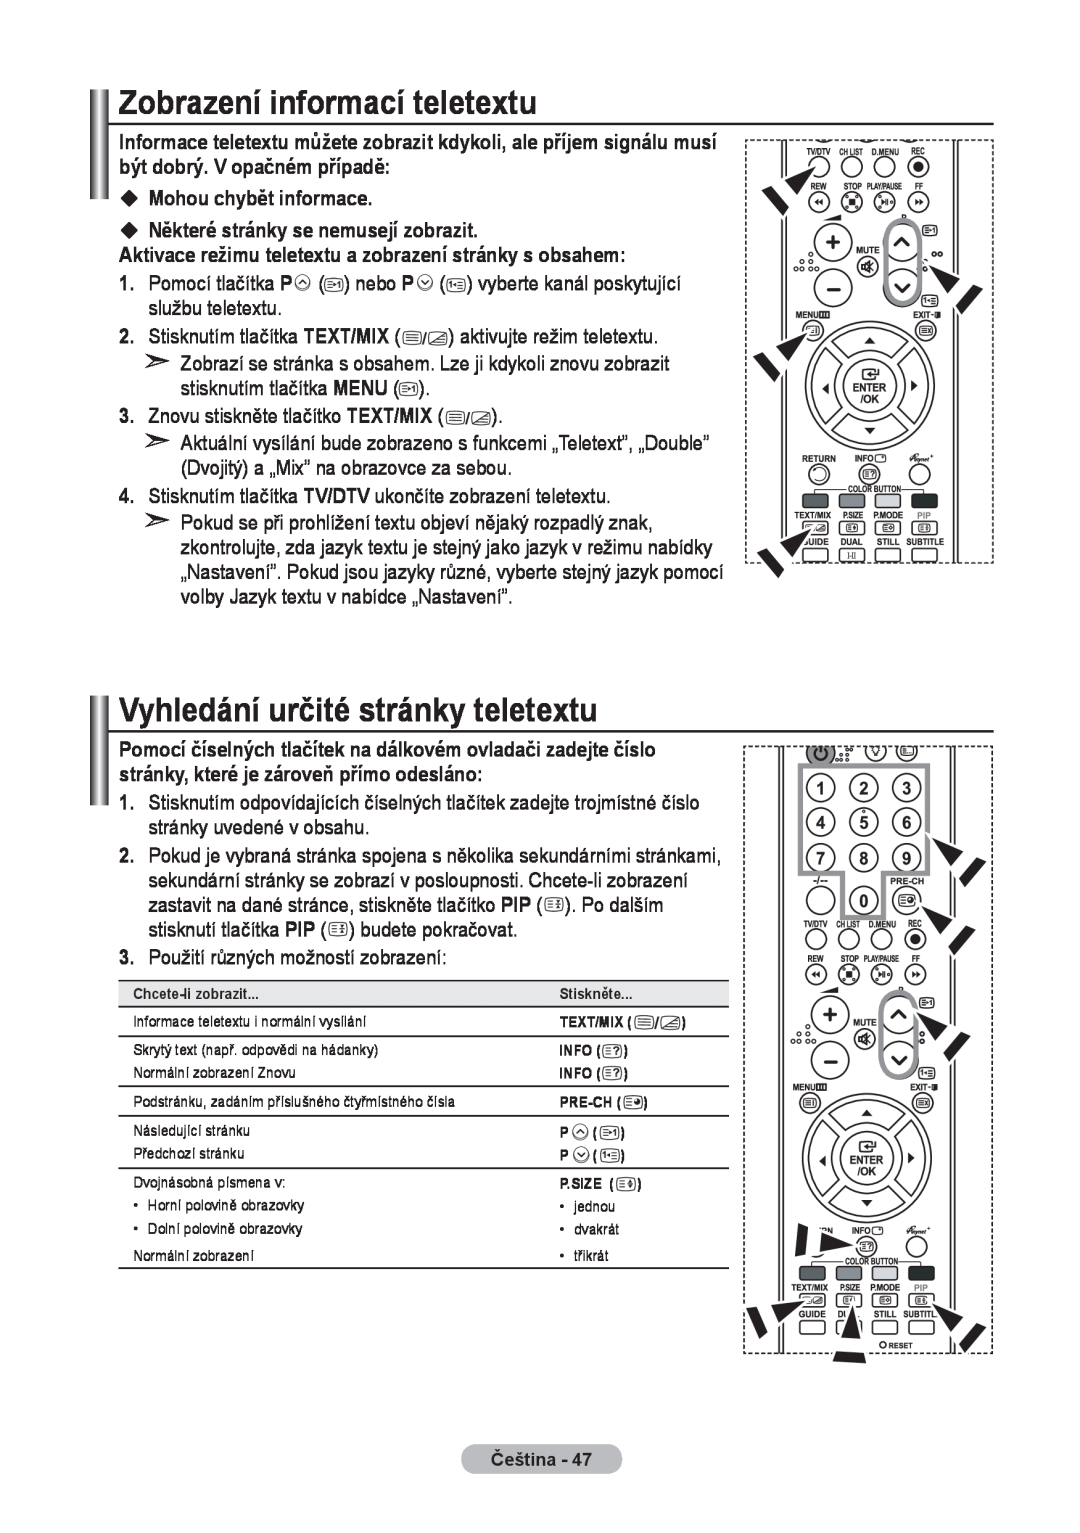 Samsung LE32R8, LE37R8, LE40R8 manual Zobrazení informací teletextu, Vyhledání určité stránky teletextu 